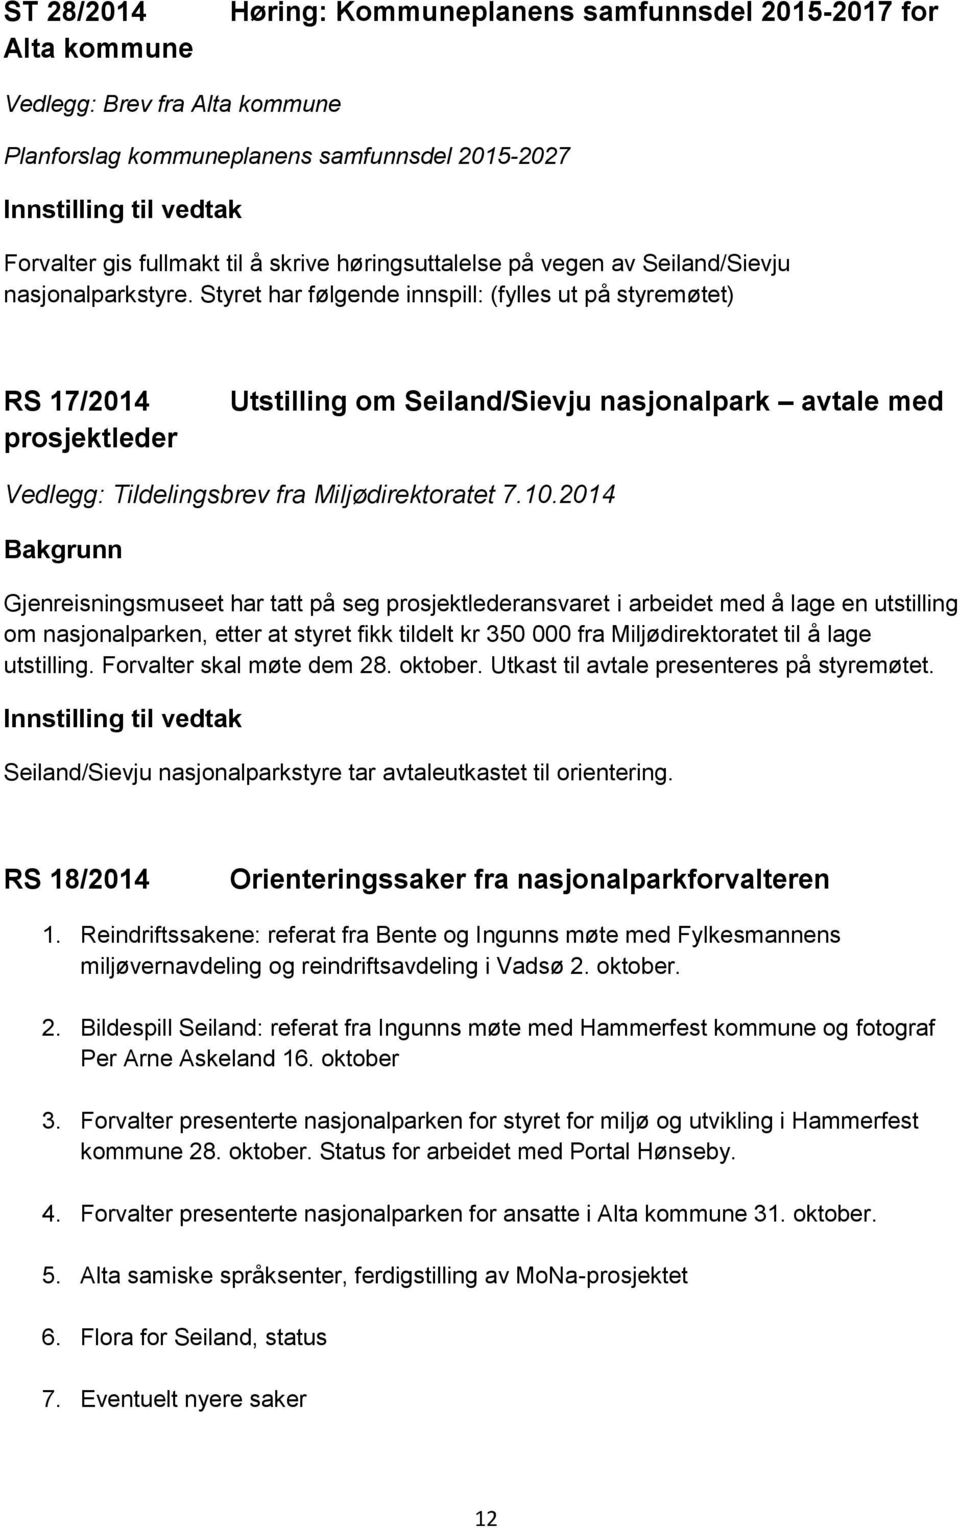 Styret har følgende innspill: (fylles ut på styremøtet) RS 17/2014 prosjektleder Utstilling om Seiland/Sievju nasjonalpark avtale med Vedlegg: Tildelingsbrev fra Miljødirektoratet 7.10.